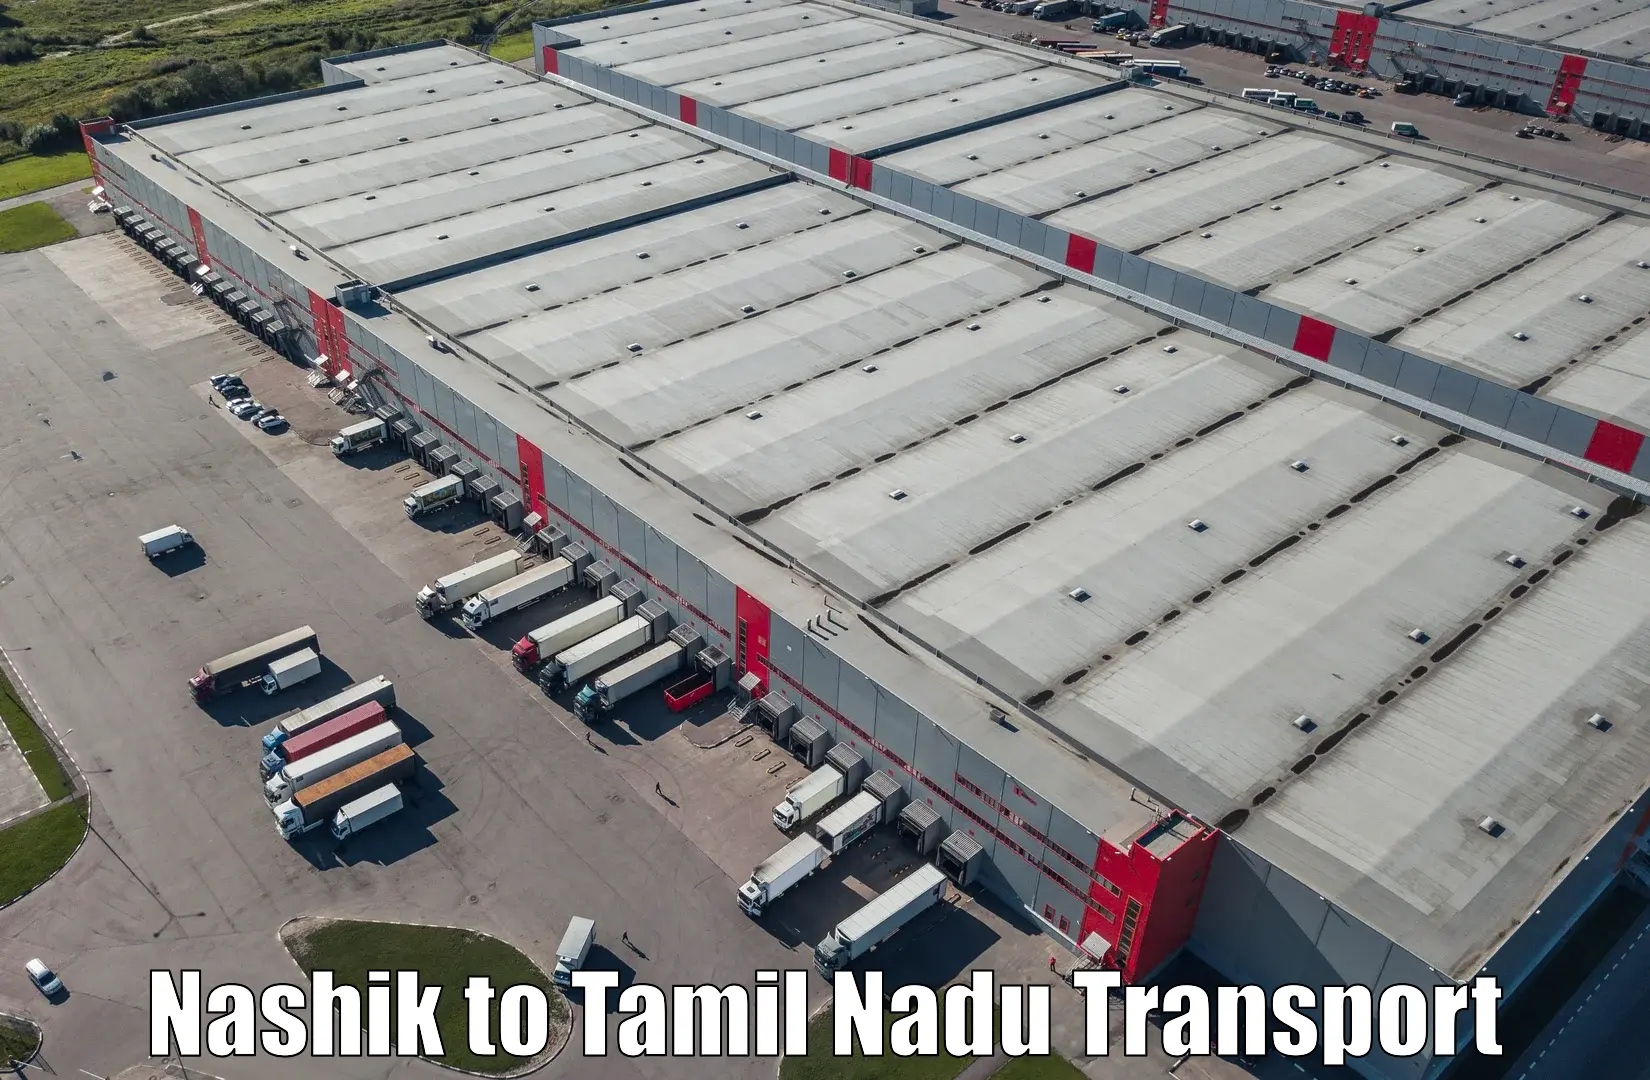 Furniture transport service Nashik to Mettur